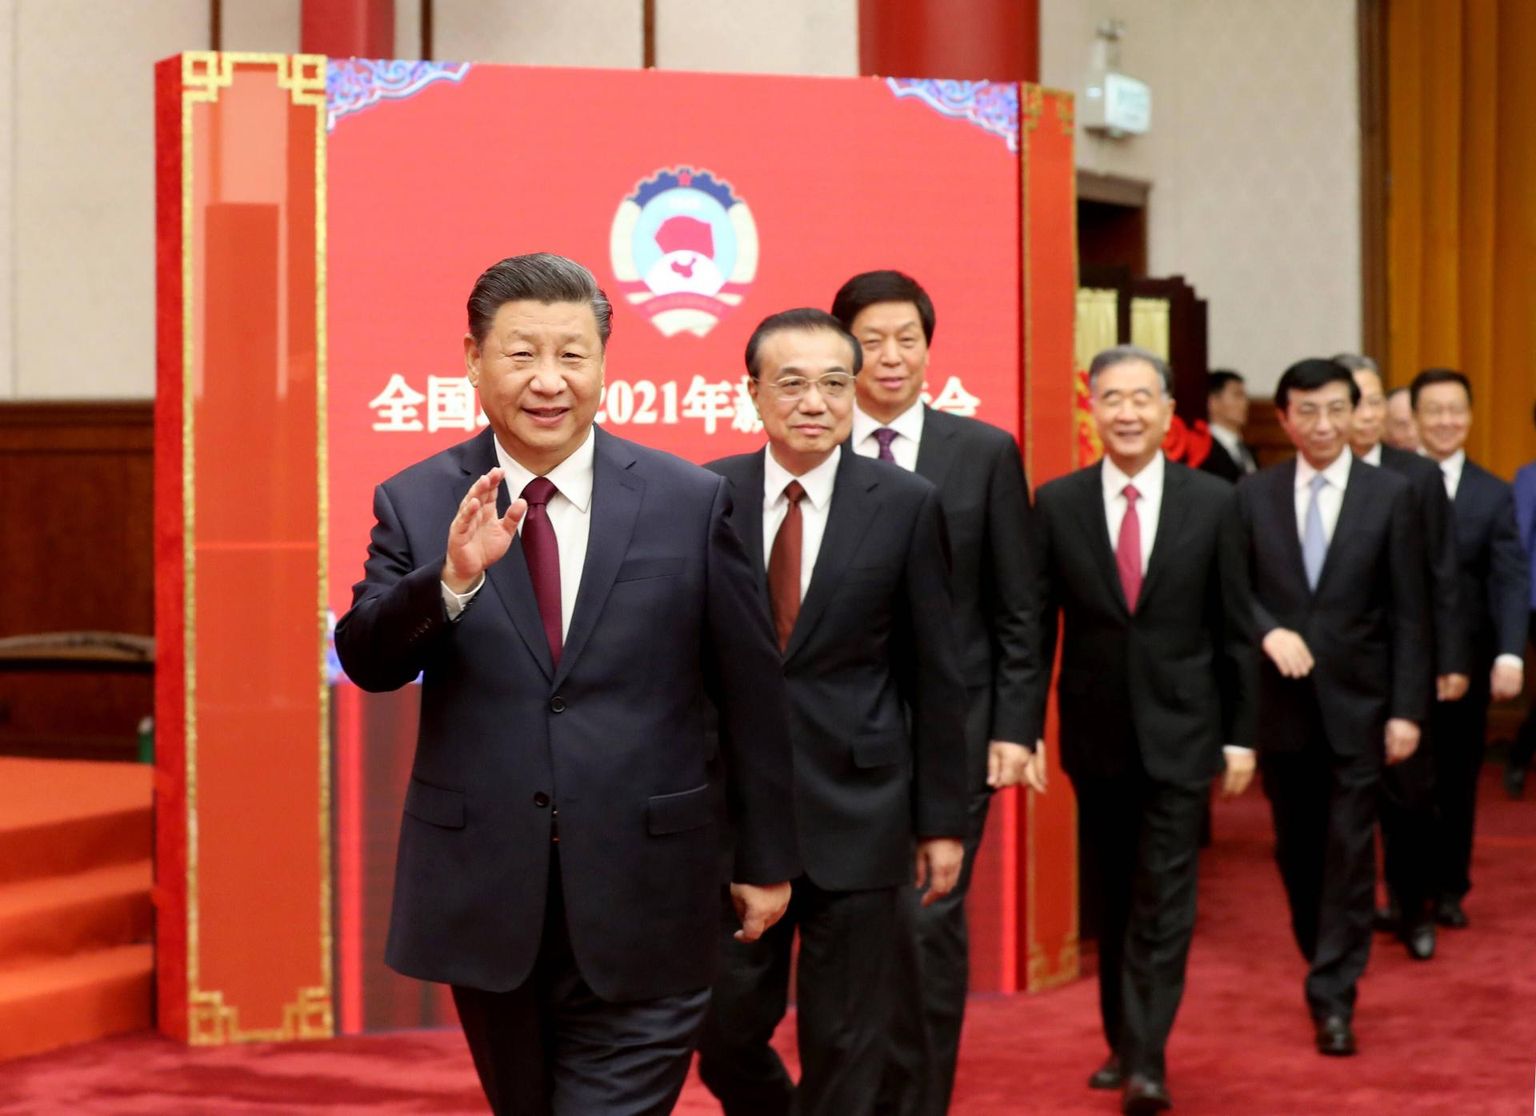 Hiina Kommunistliku Partei liidrid. Esiplaanil esimees Xi Jinping. 